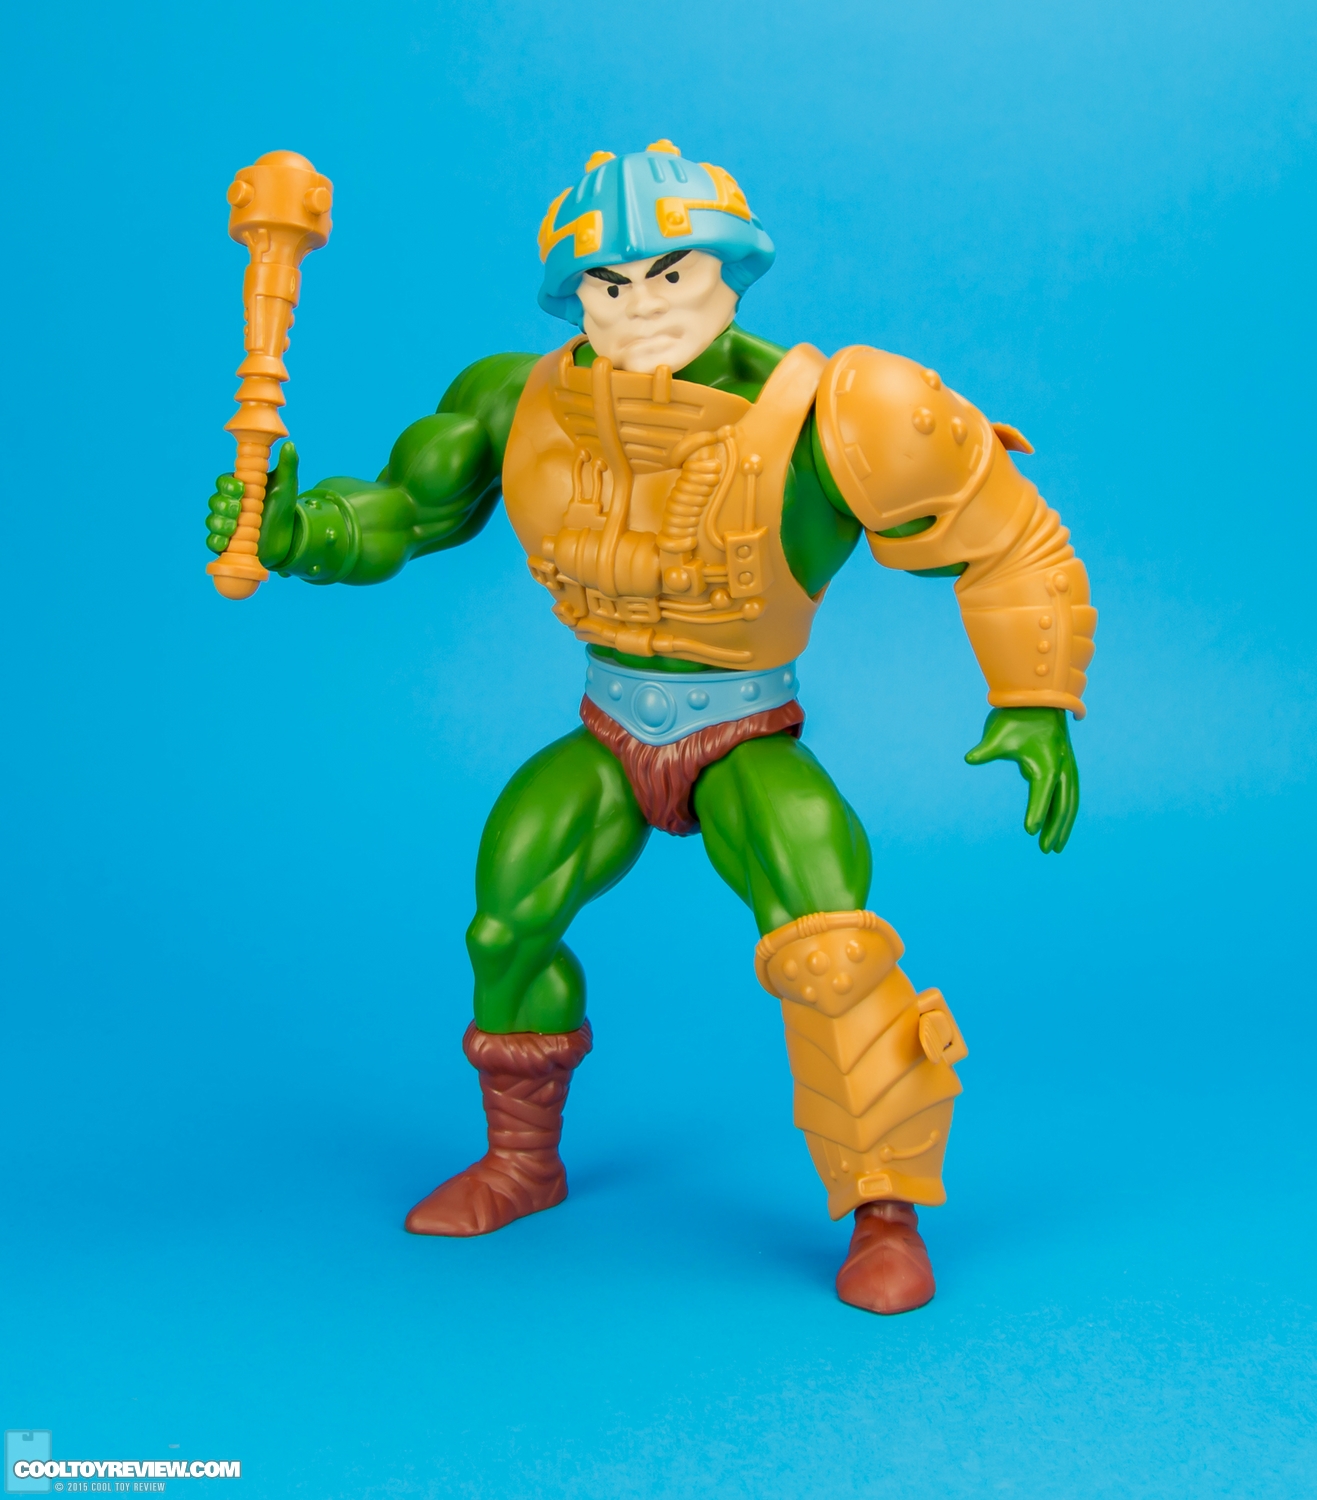 Mattel-MOTUC-Giant-Man-At-Arms-009.jpg